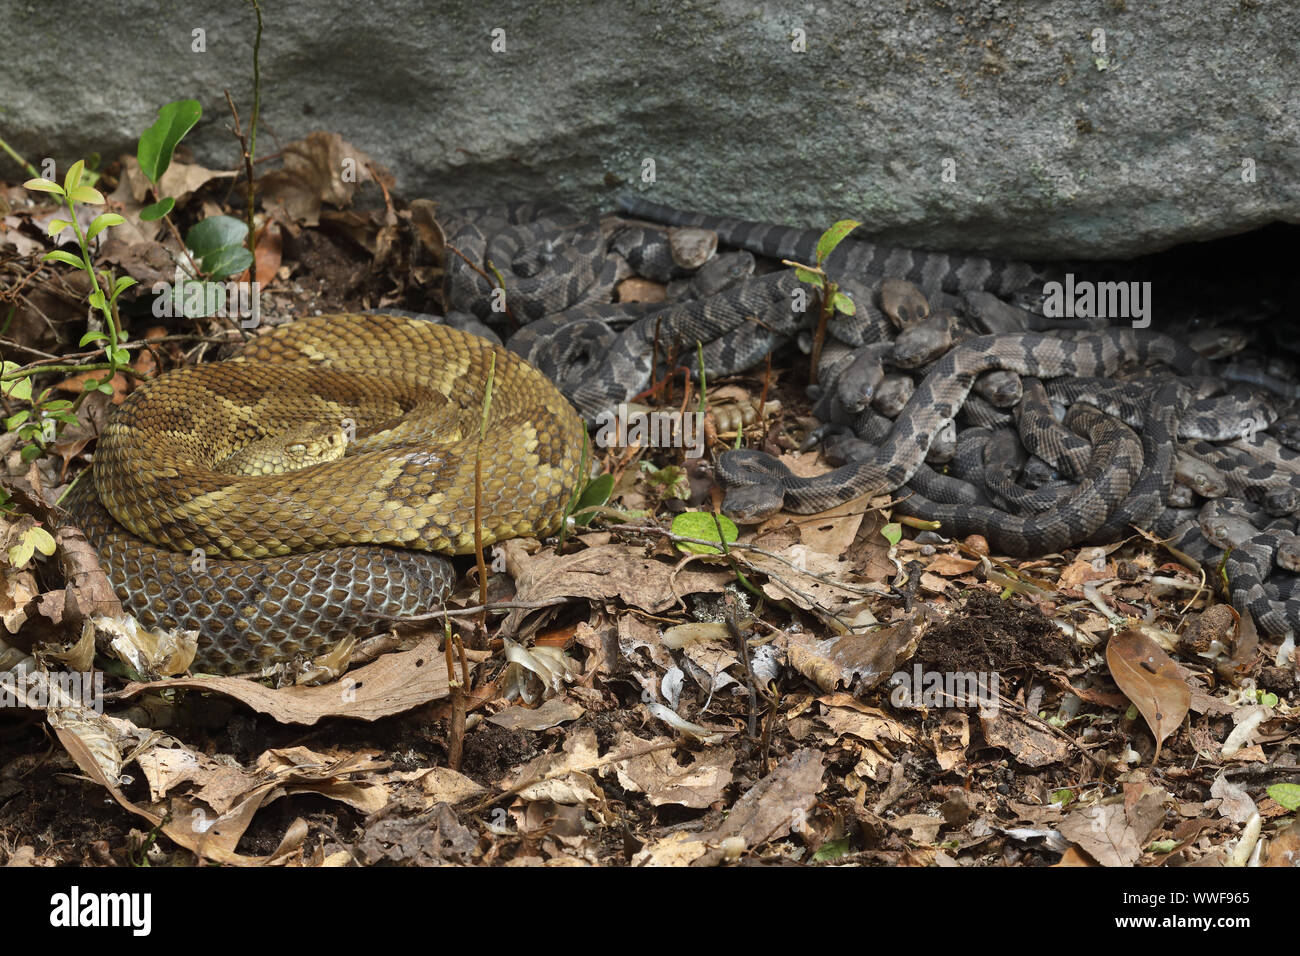 La serpiente de cascabel del bosque (Crotalus horridus), las hembras adultas y jóvenes recién nacido, Pennsylvania, hembras grávidas la serpiente de cascabel del bosque se reúnan en maternit Foto de stock